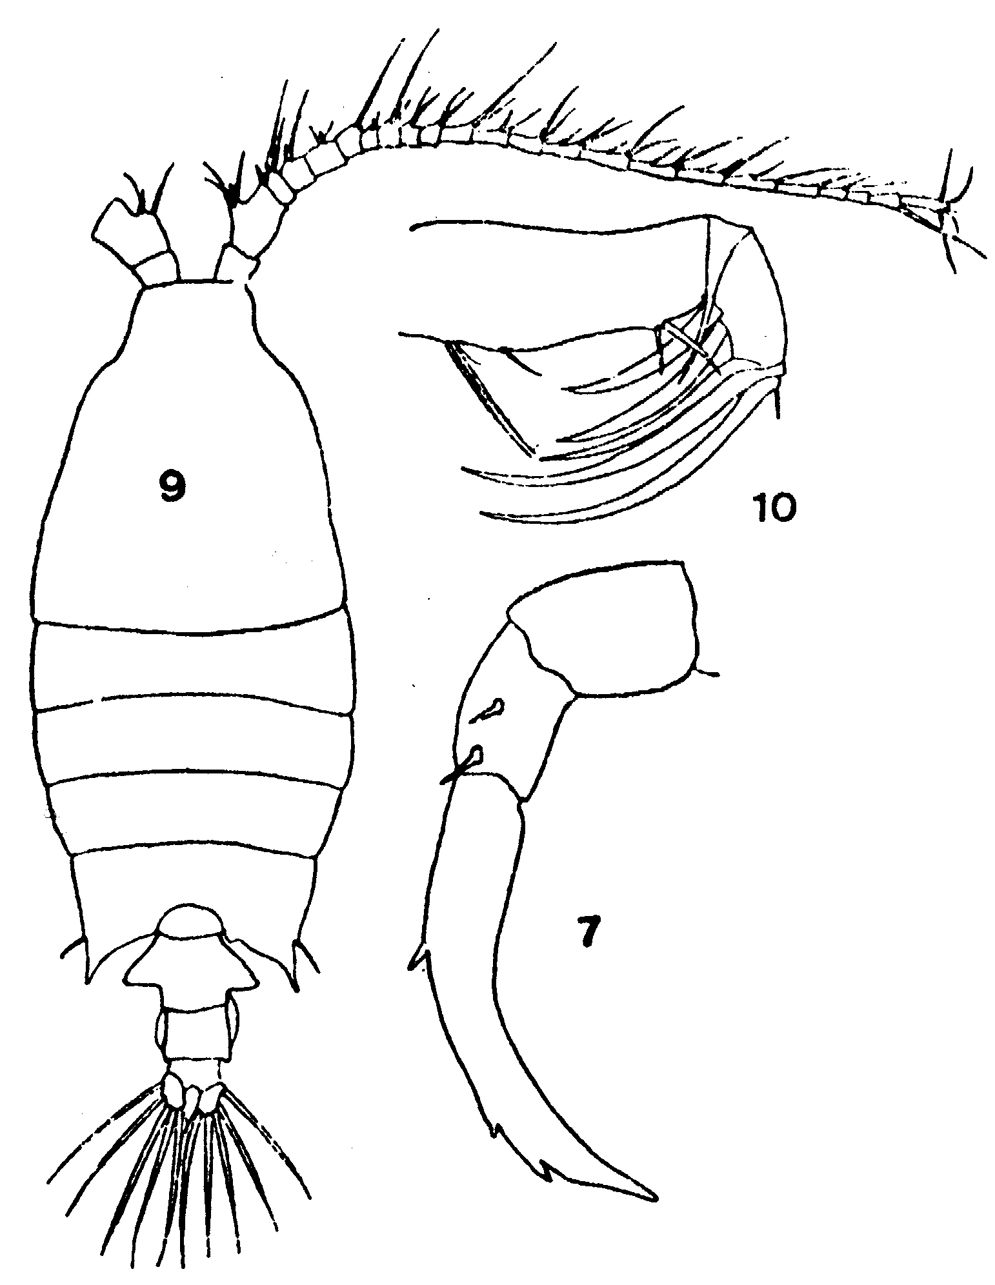 Espèce Candacia bipinnata - Planche 19 de figures morphologiques